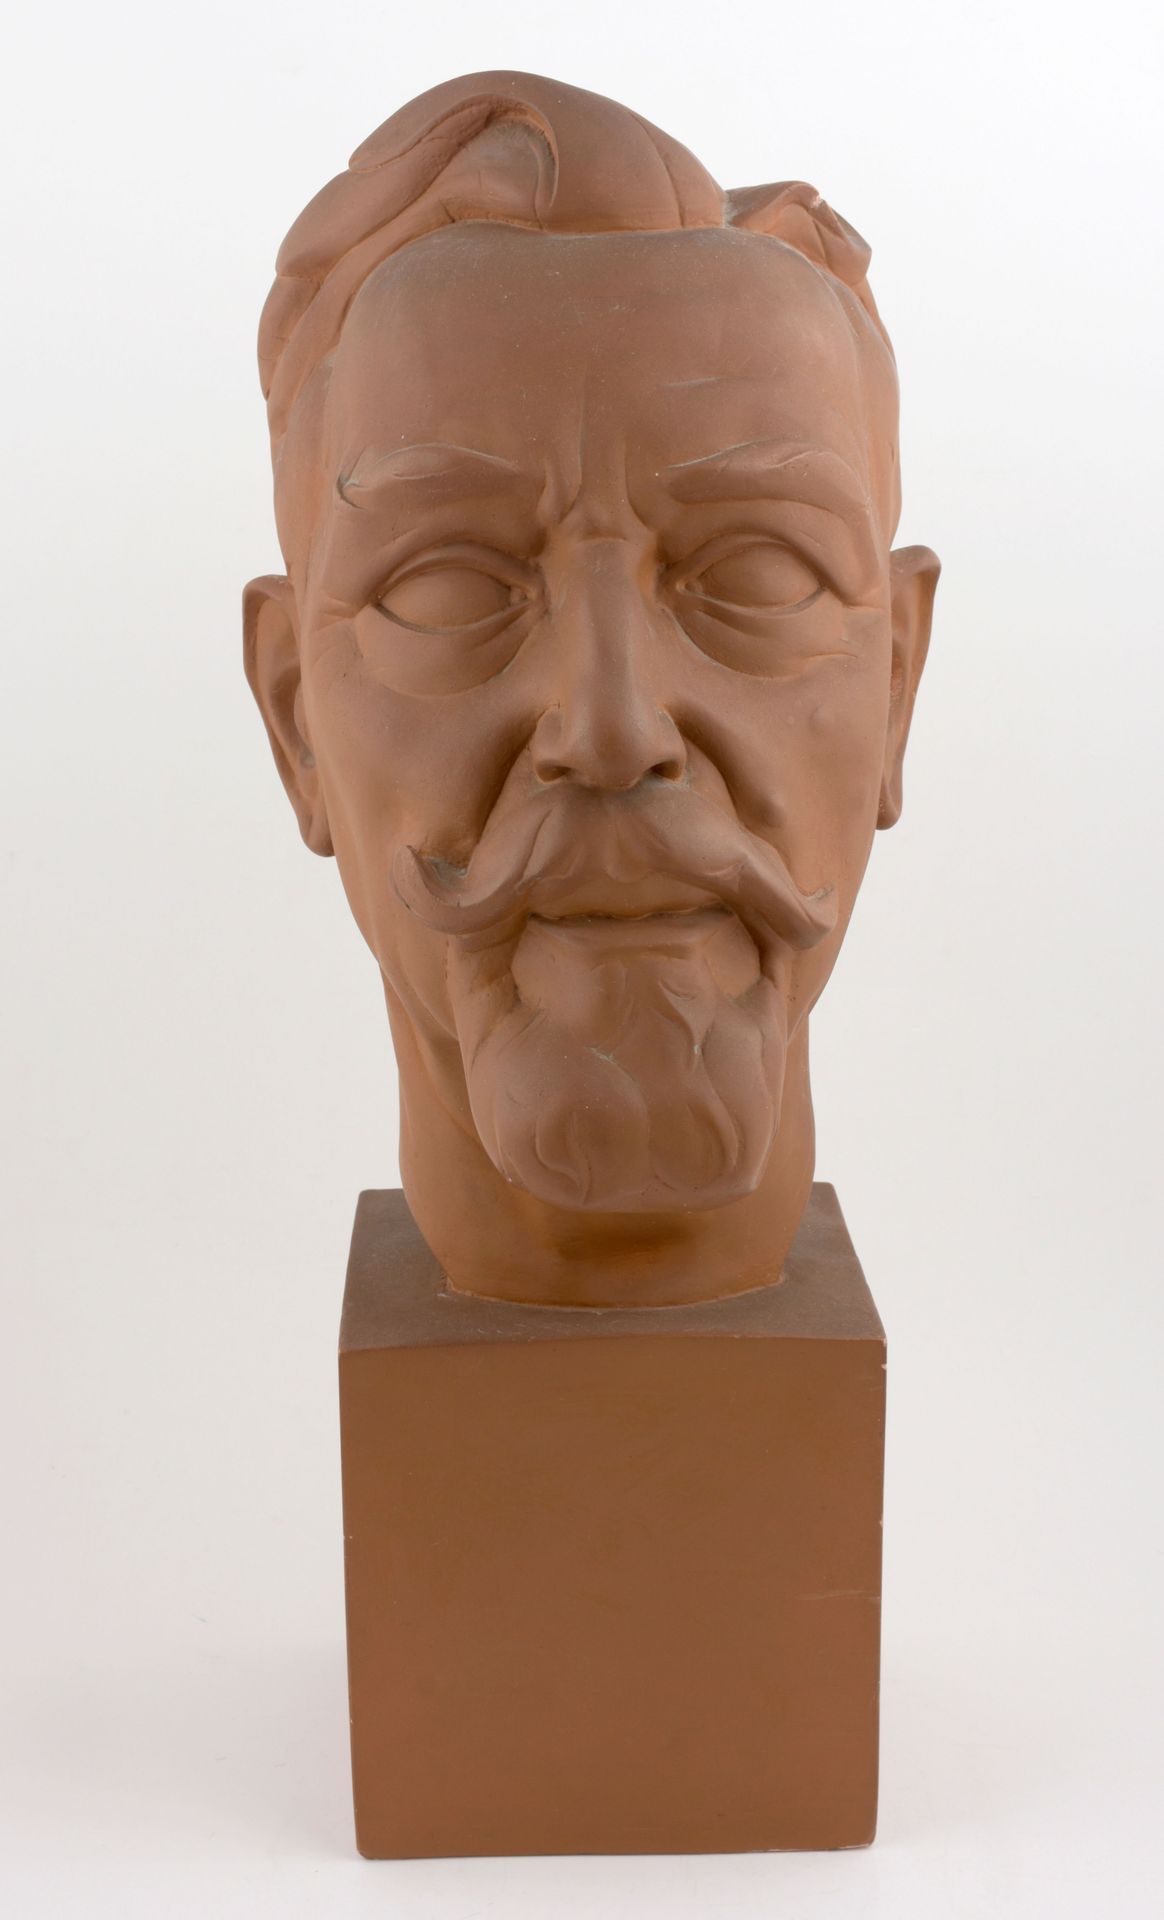 POELS, Albert (1903-1984) Busto de Ernest Claes

(1955) Plaasteren kop, terracot&hellip;